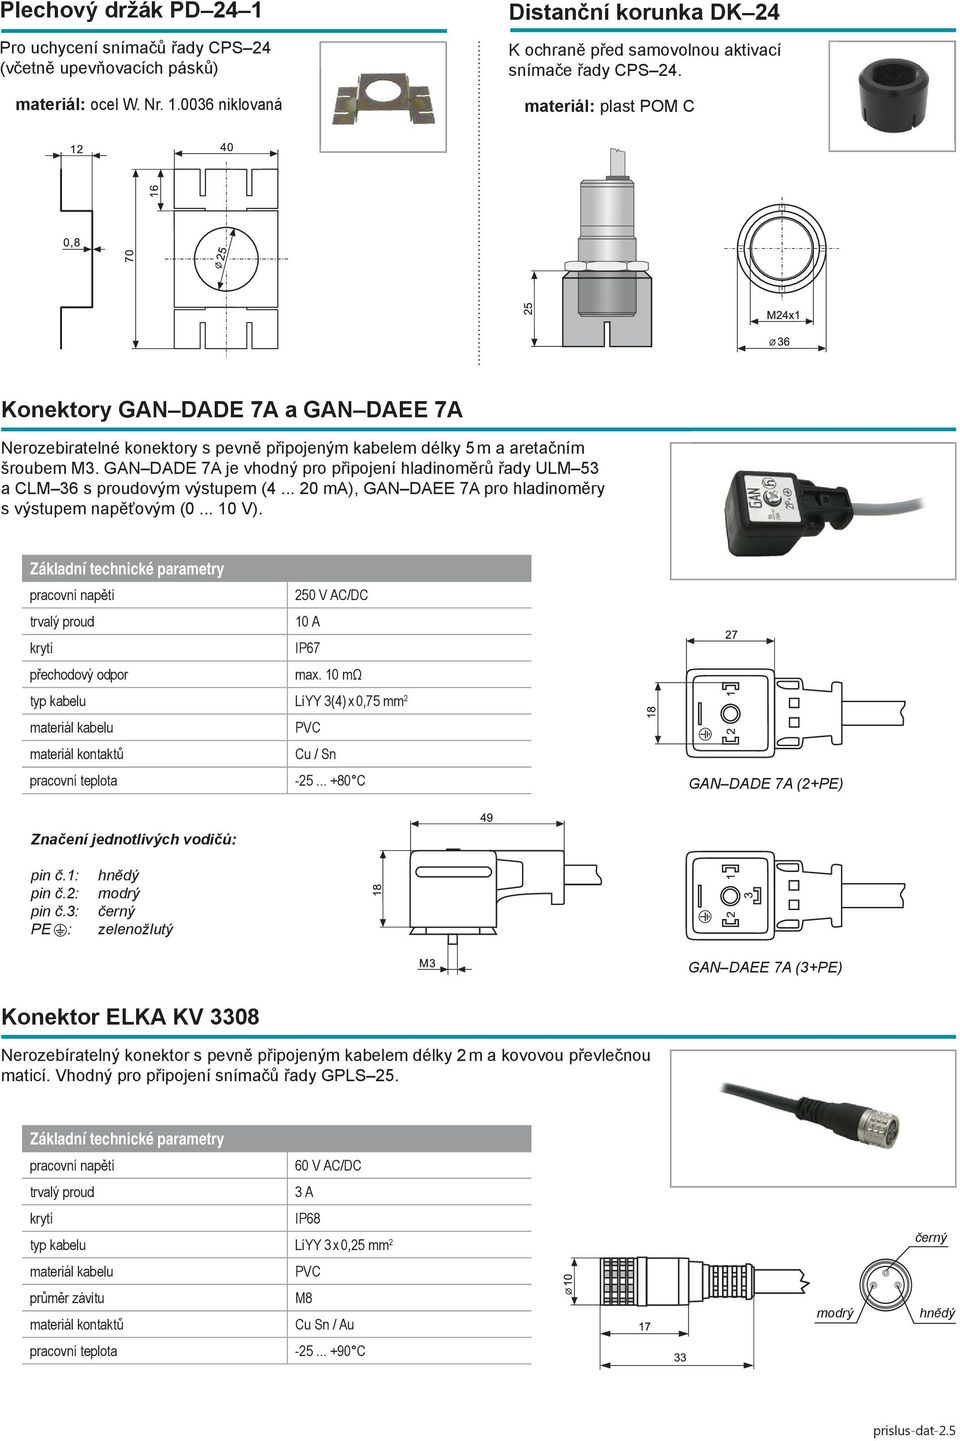 GAN DADE 7A je vhodný pro připojení hladinoměrů řady ULM 53 a CLM 36 s proudovým výstupem (4... 20 ma), GAN DAEE 7A pro hladinoměry s výstupem napěťovým (0... 10 V). 10 A přechodový odpor max.